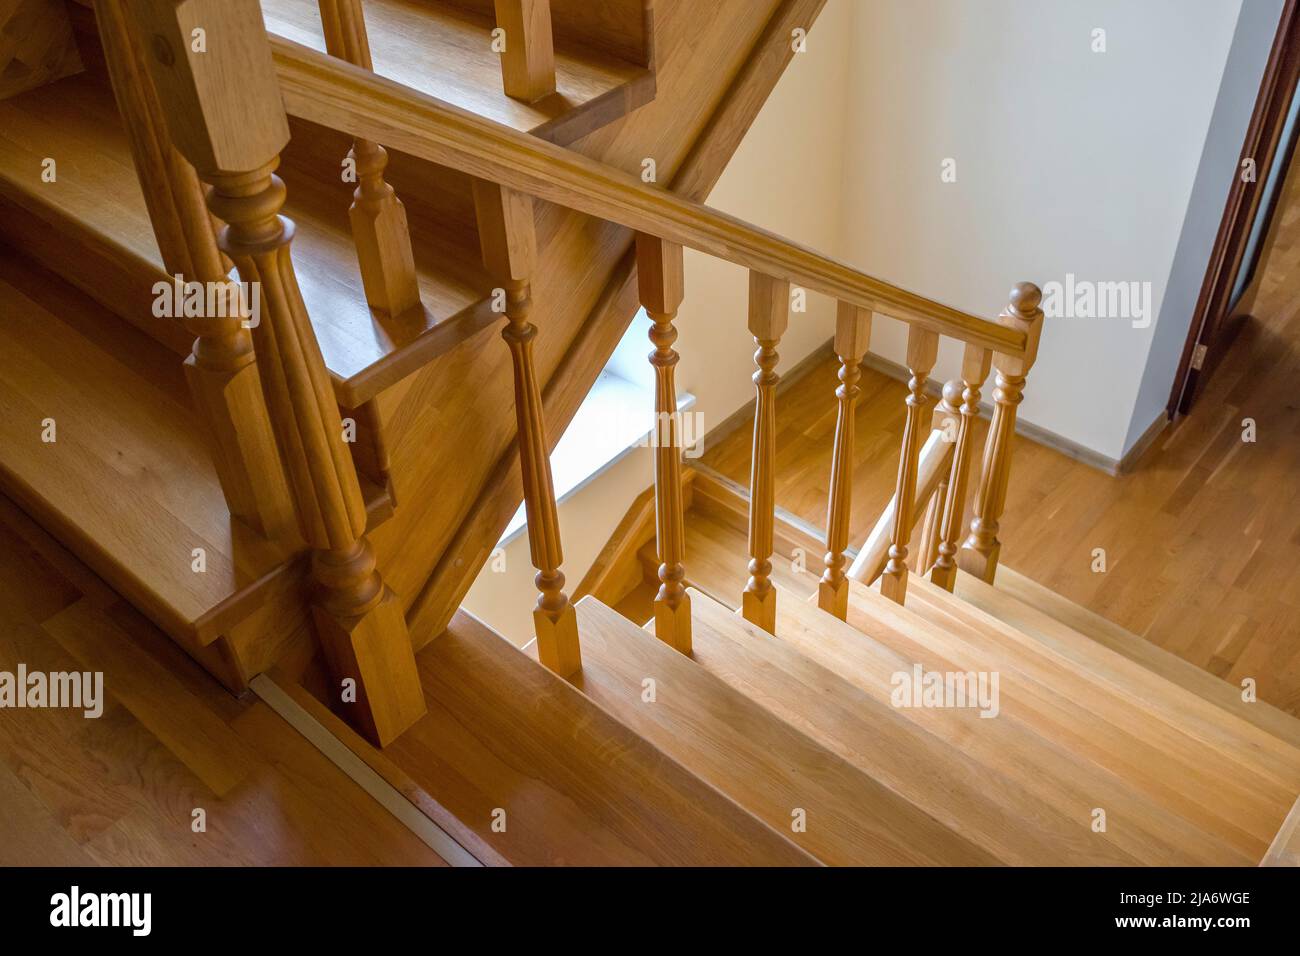 Détails de l'escalier en bois brun. Gros plan, vue de dessus. Banque D'Images